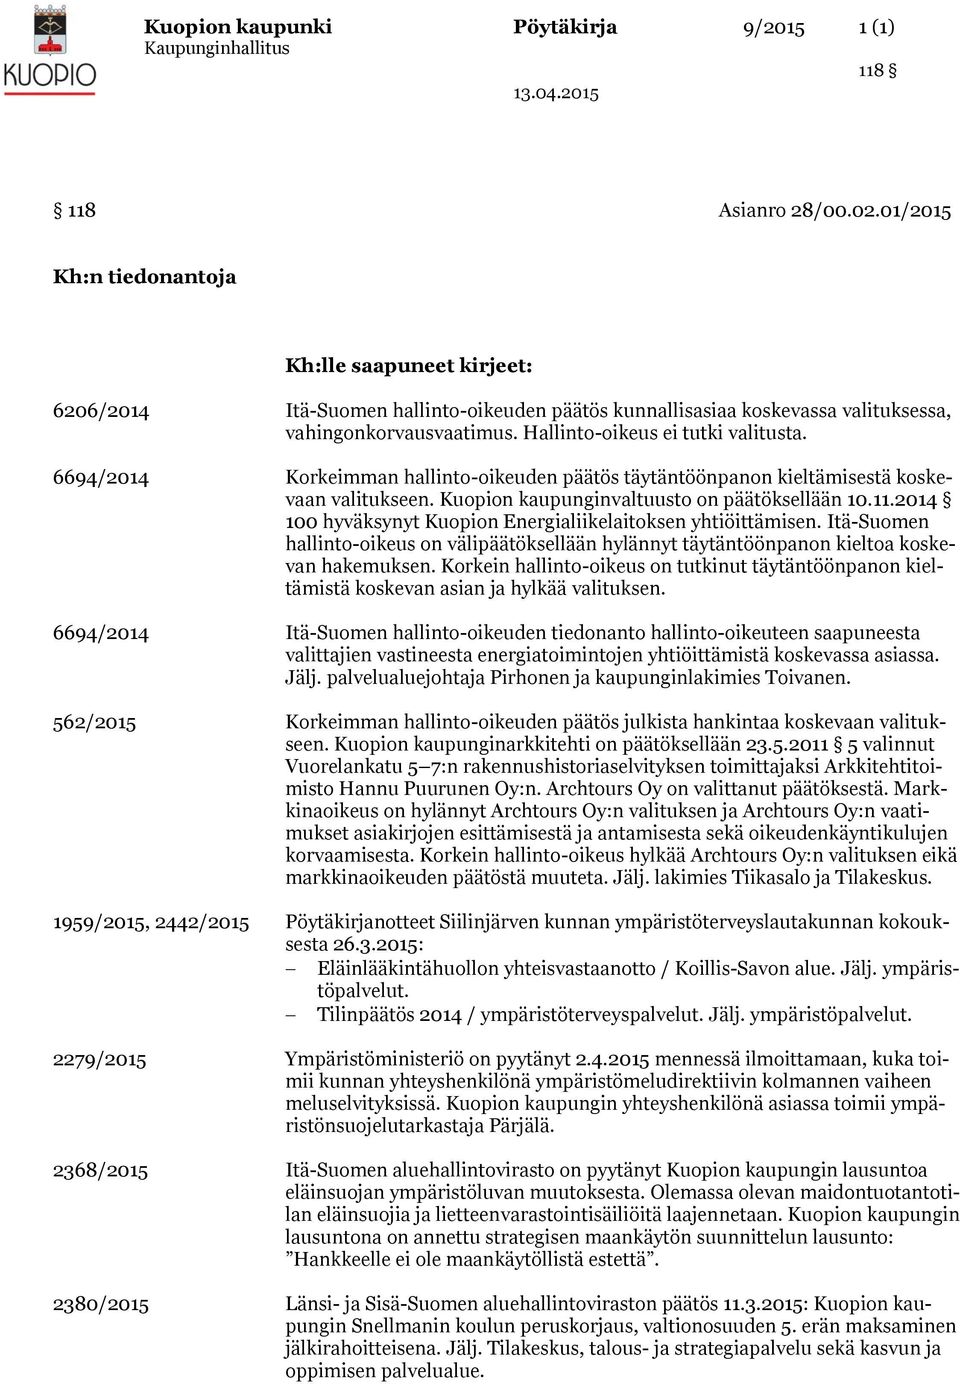 6694/2014 Korkeimman hallinto-oikeuden päätös täytäntöönpanon kieltämisestä koskevaan valitukseen. Kuopion kaupunginvaltuusto on päätöksellään 10.11.